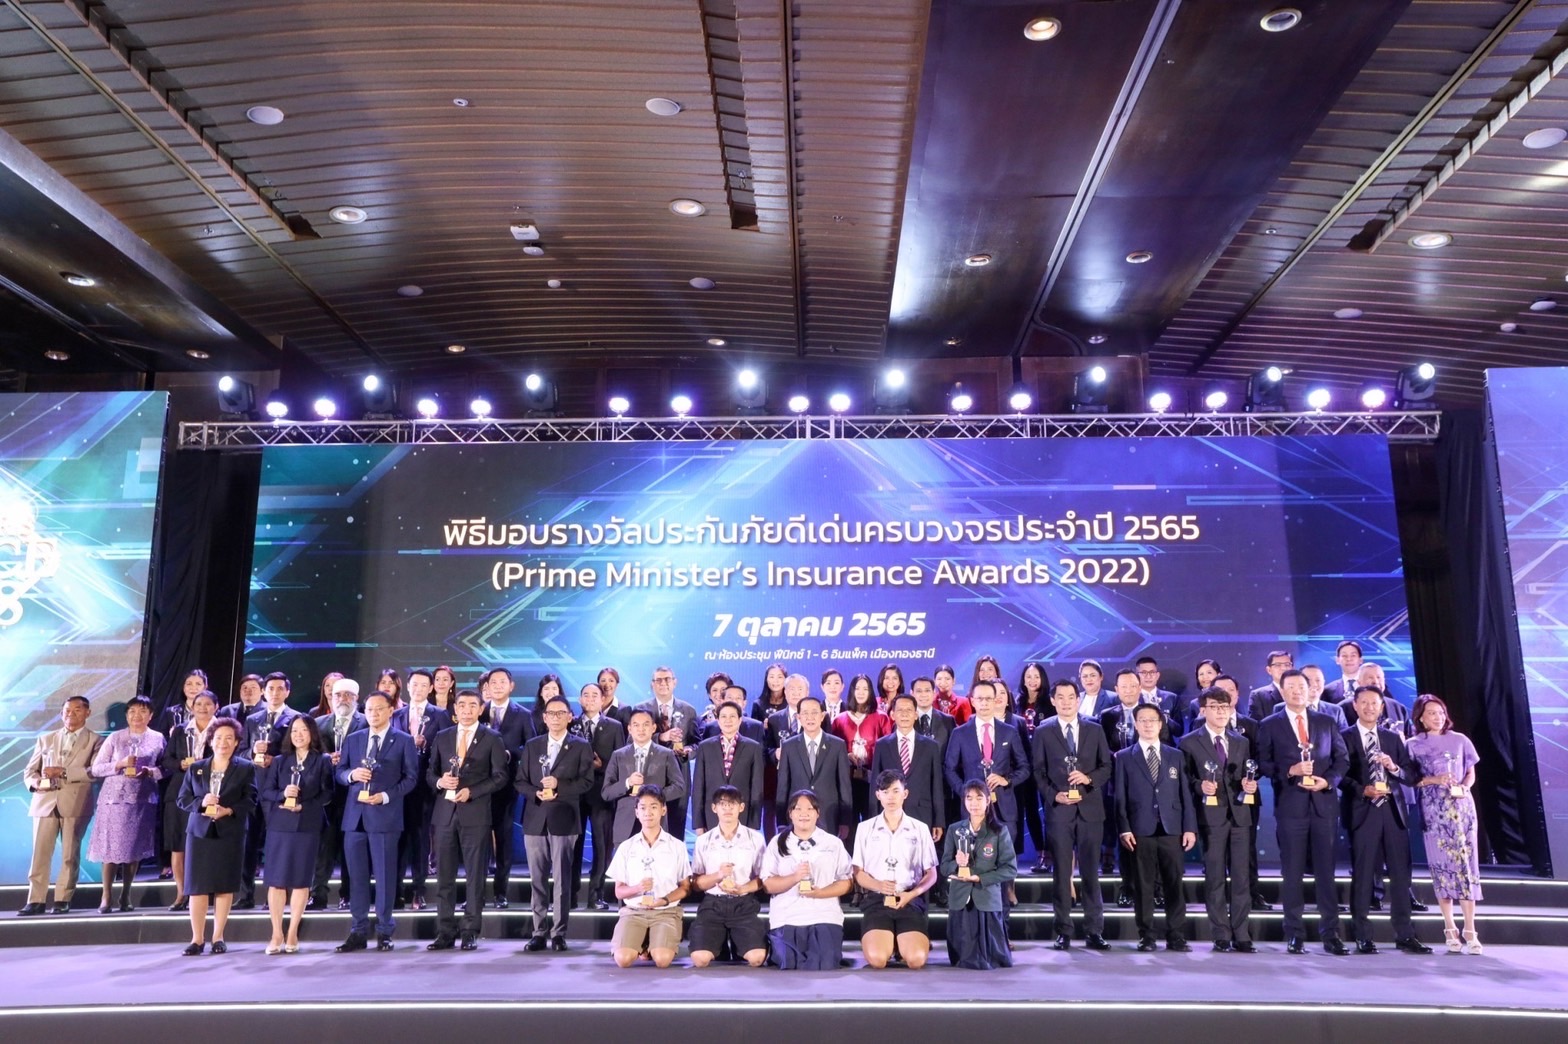 รมต.คลัง เปิดงาน Thailand InsurTech Fair ครั้งที่ 2 พร้อมสอบรางวัล “สุดยอดประกันภัยดีเด่นครบวงจรประจำปี 2565“